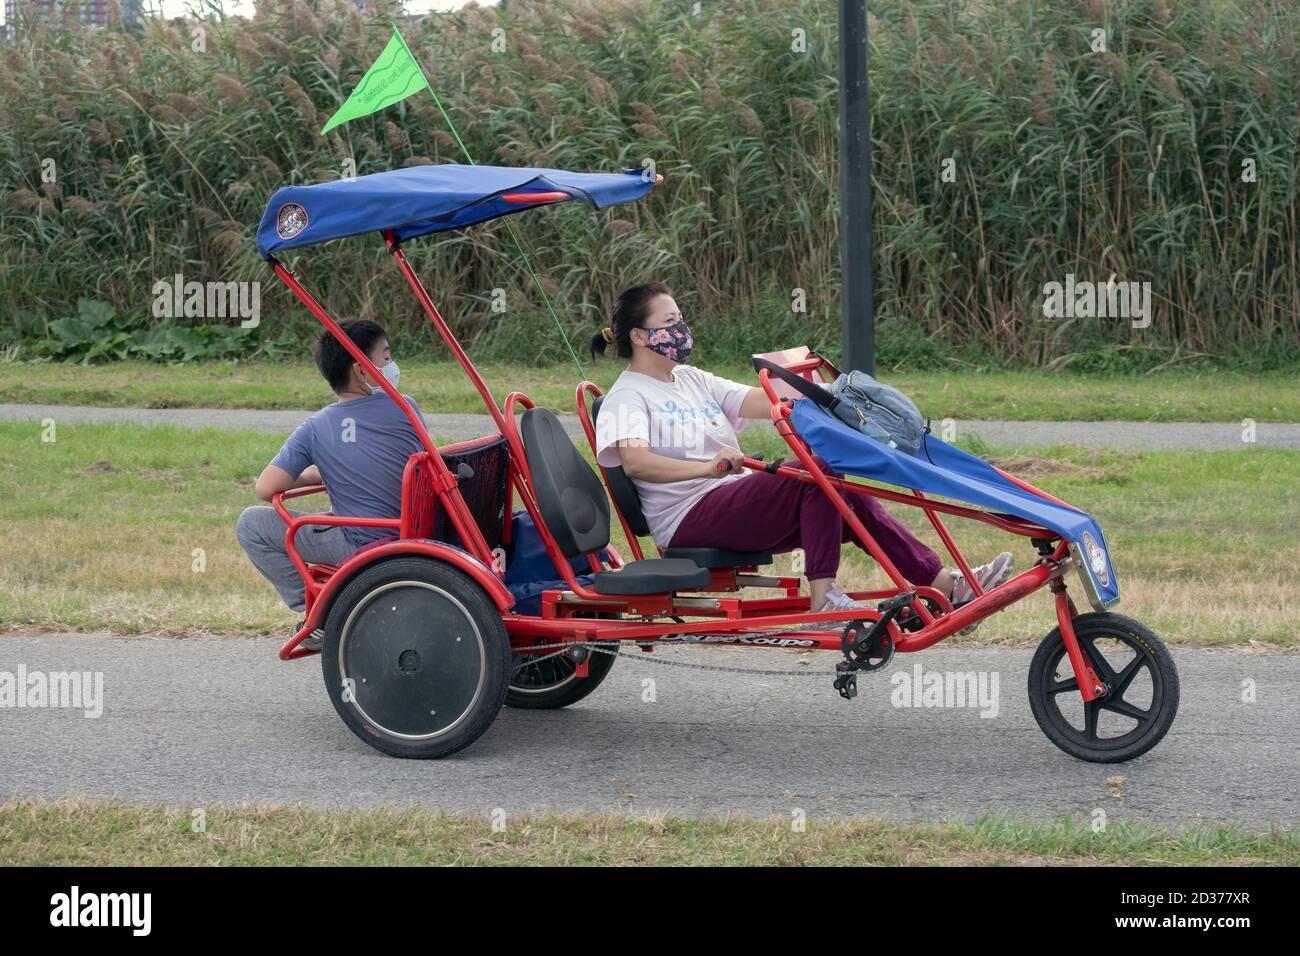 Une mère et un fils d'Amérique asiatique portant des masques sur un vélo Wheel Fun 3 Wheel surrey à Flushing Meadows Corona Park dans Queens, New York City. Banque D'Images